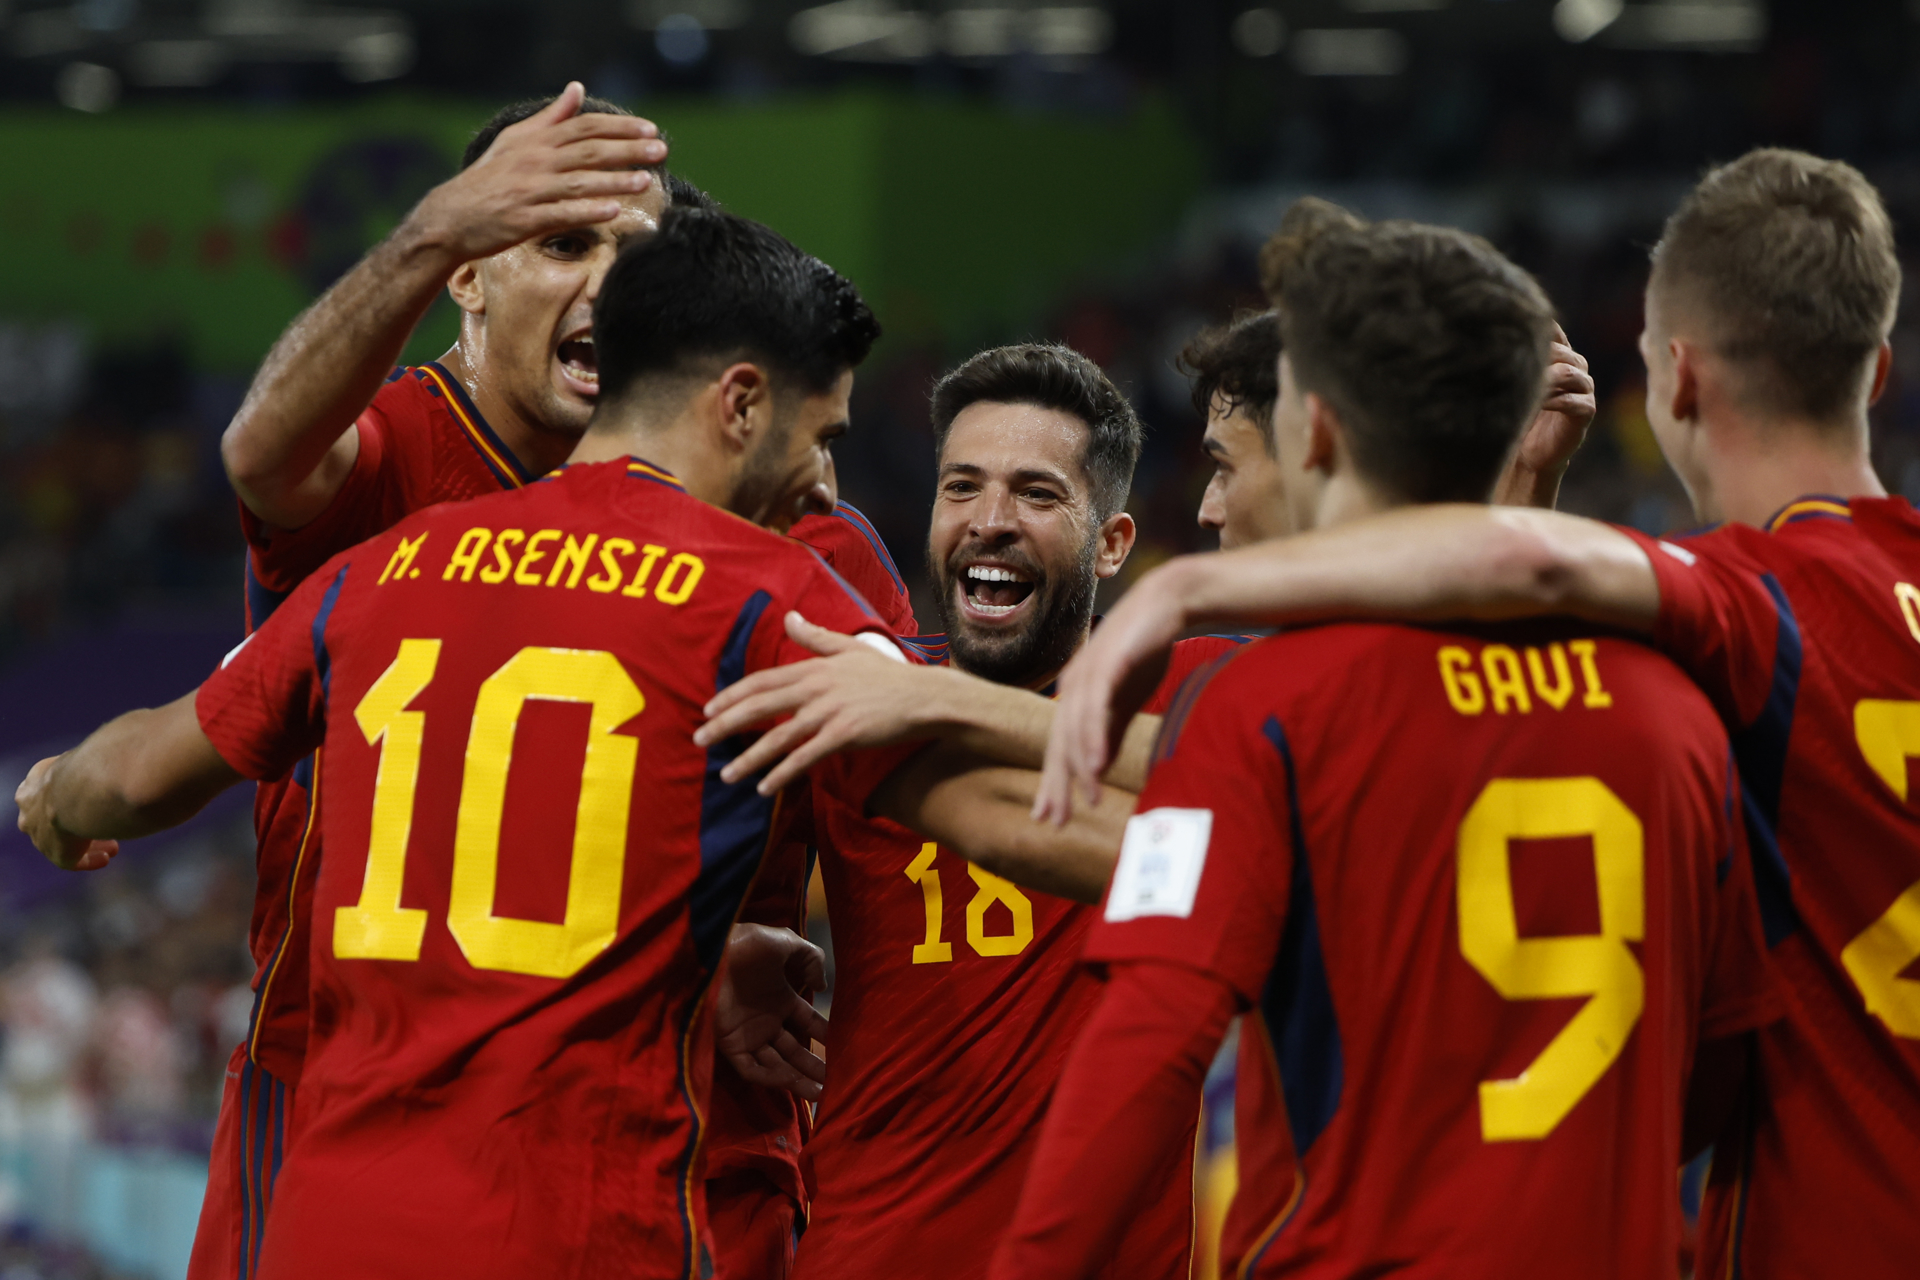 Espanha X Costa Rica: veja as melhores fotos do jogo da Copa